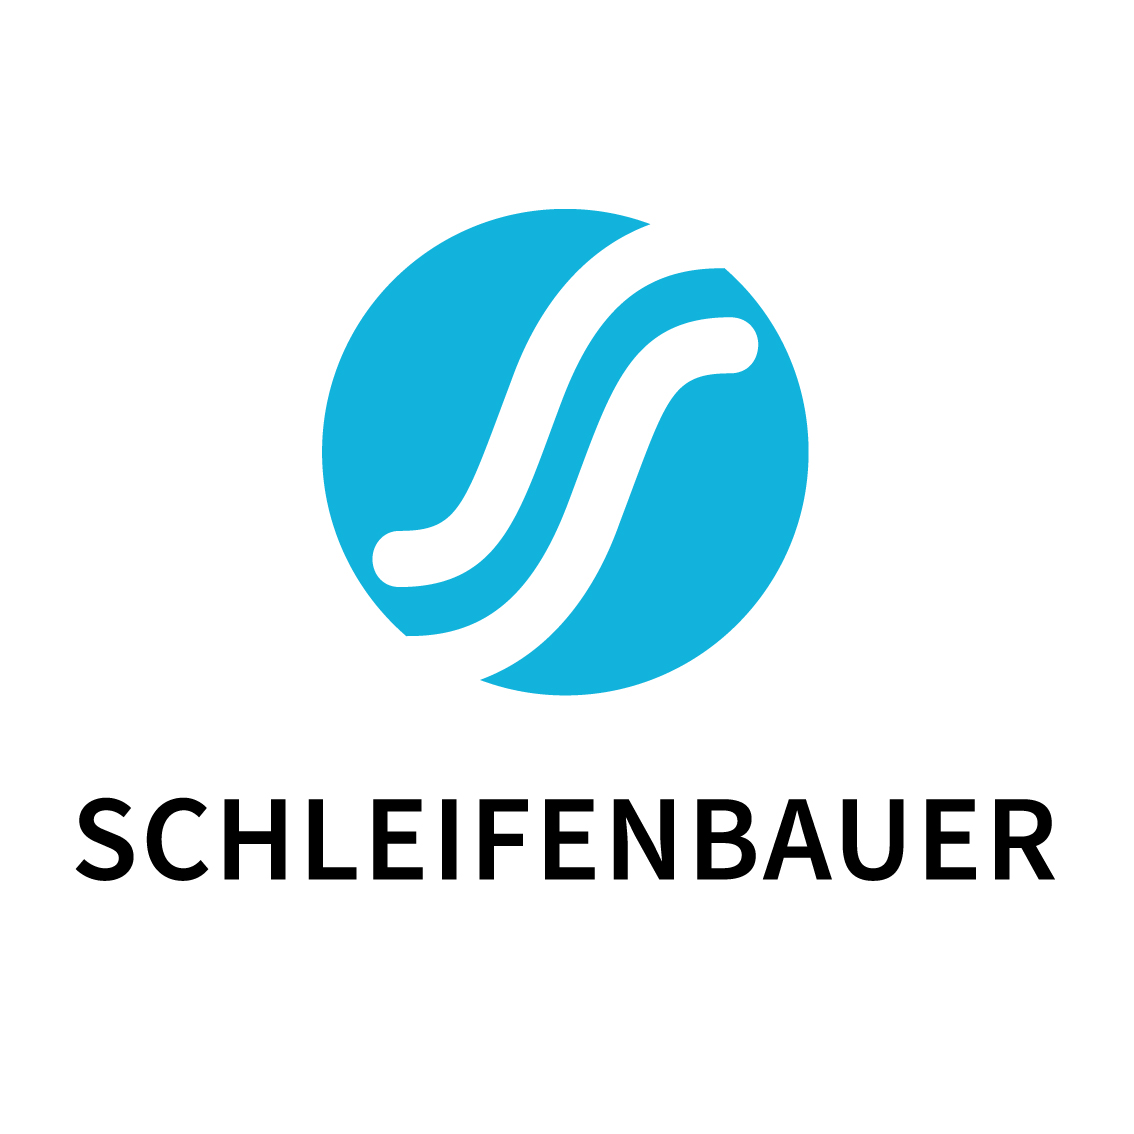 Schleifenbauer: Uw Partner in PDU Innovatie, Made in Netherlands